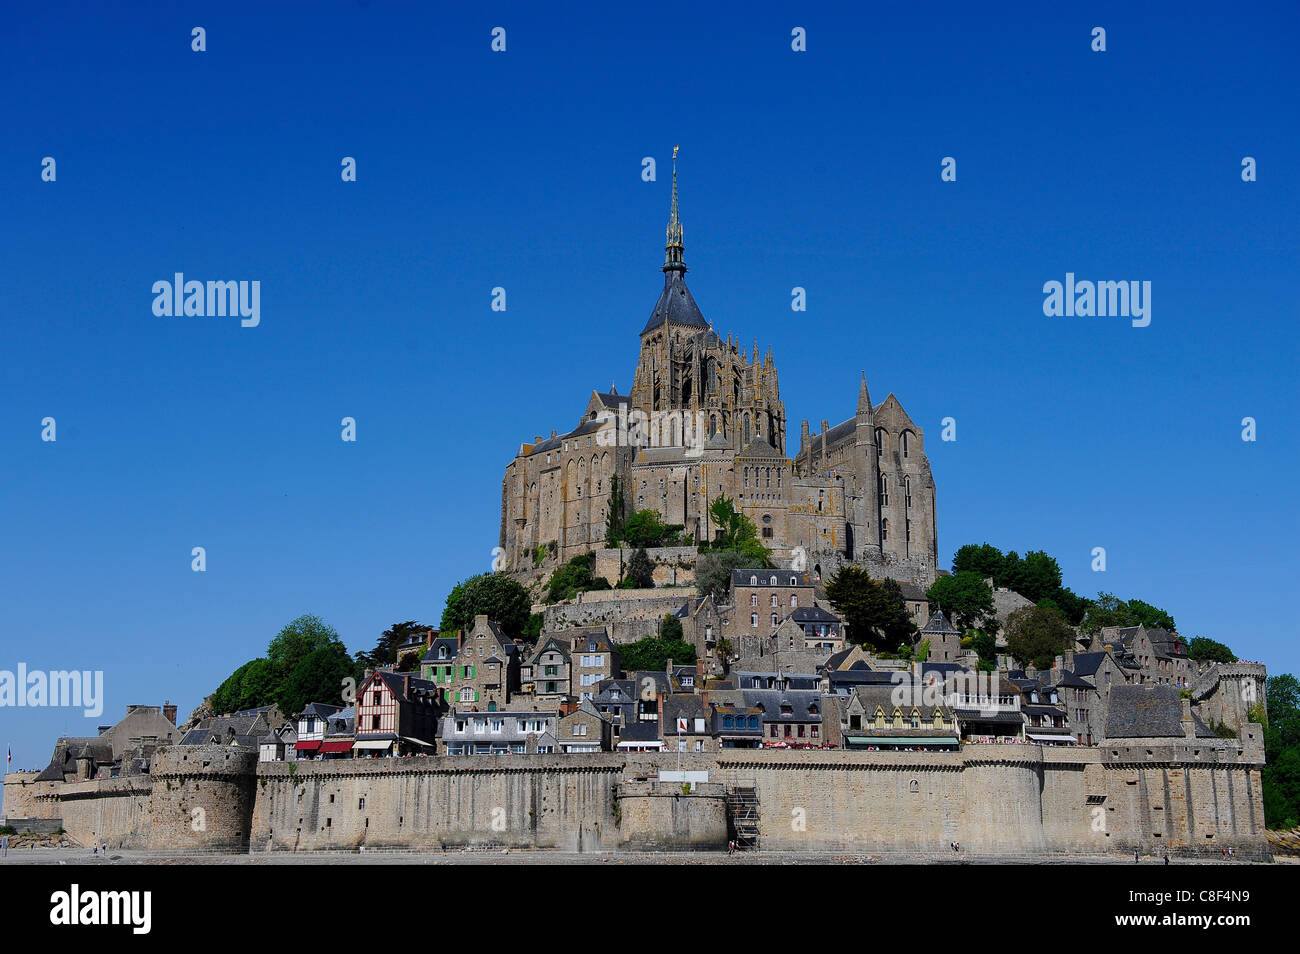 Abtei von Mont-Saint-Michel, UNESCO World Heritage Site, Normandie, Frankreich Stockfoto